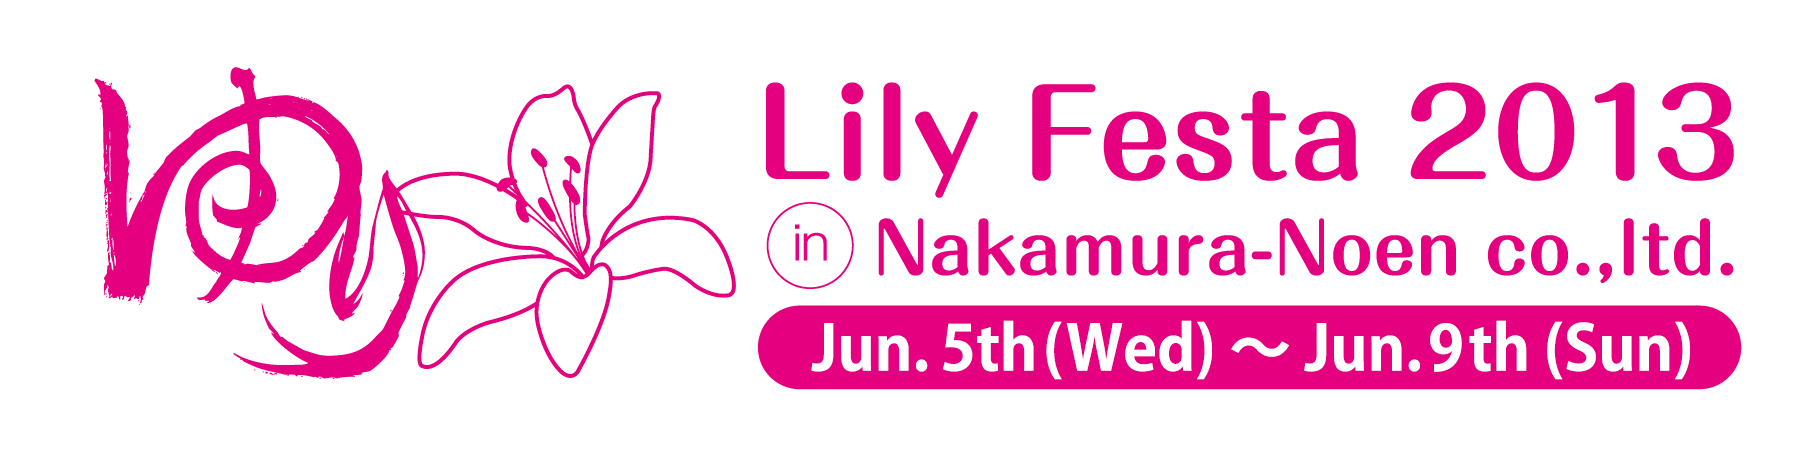 LILY FESTA 2013 in NAKAMURA-NOEN（2013/3/6)